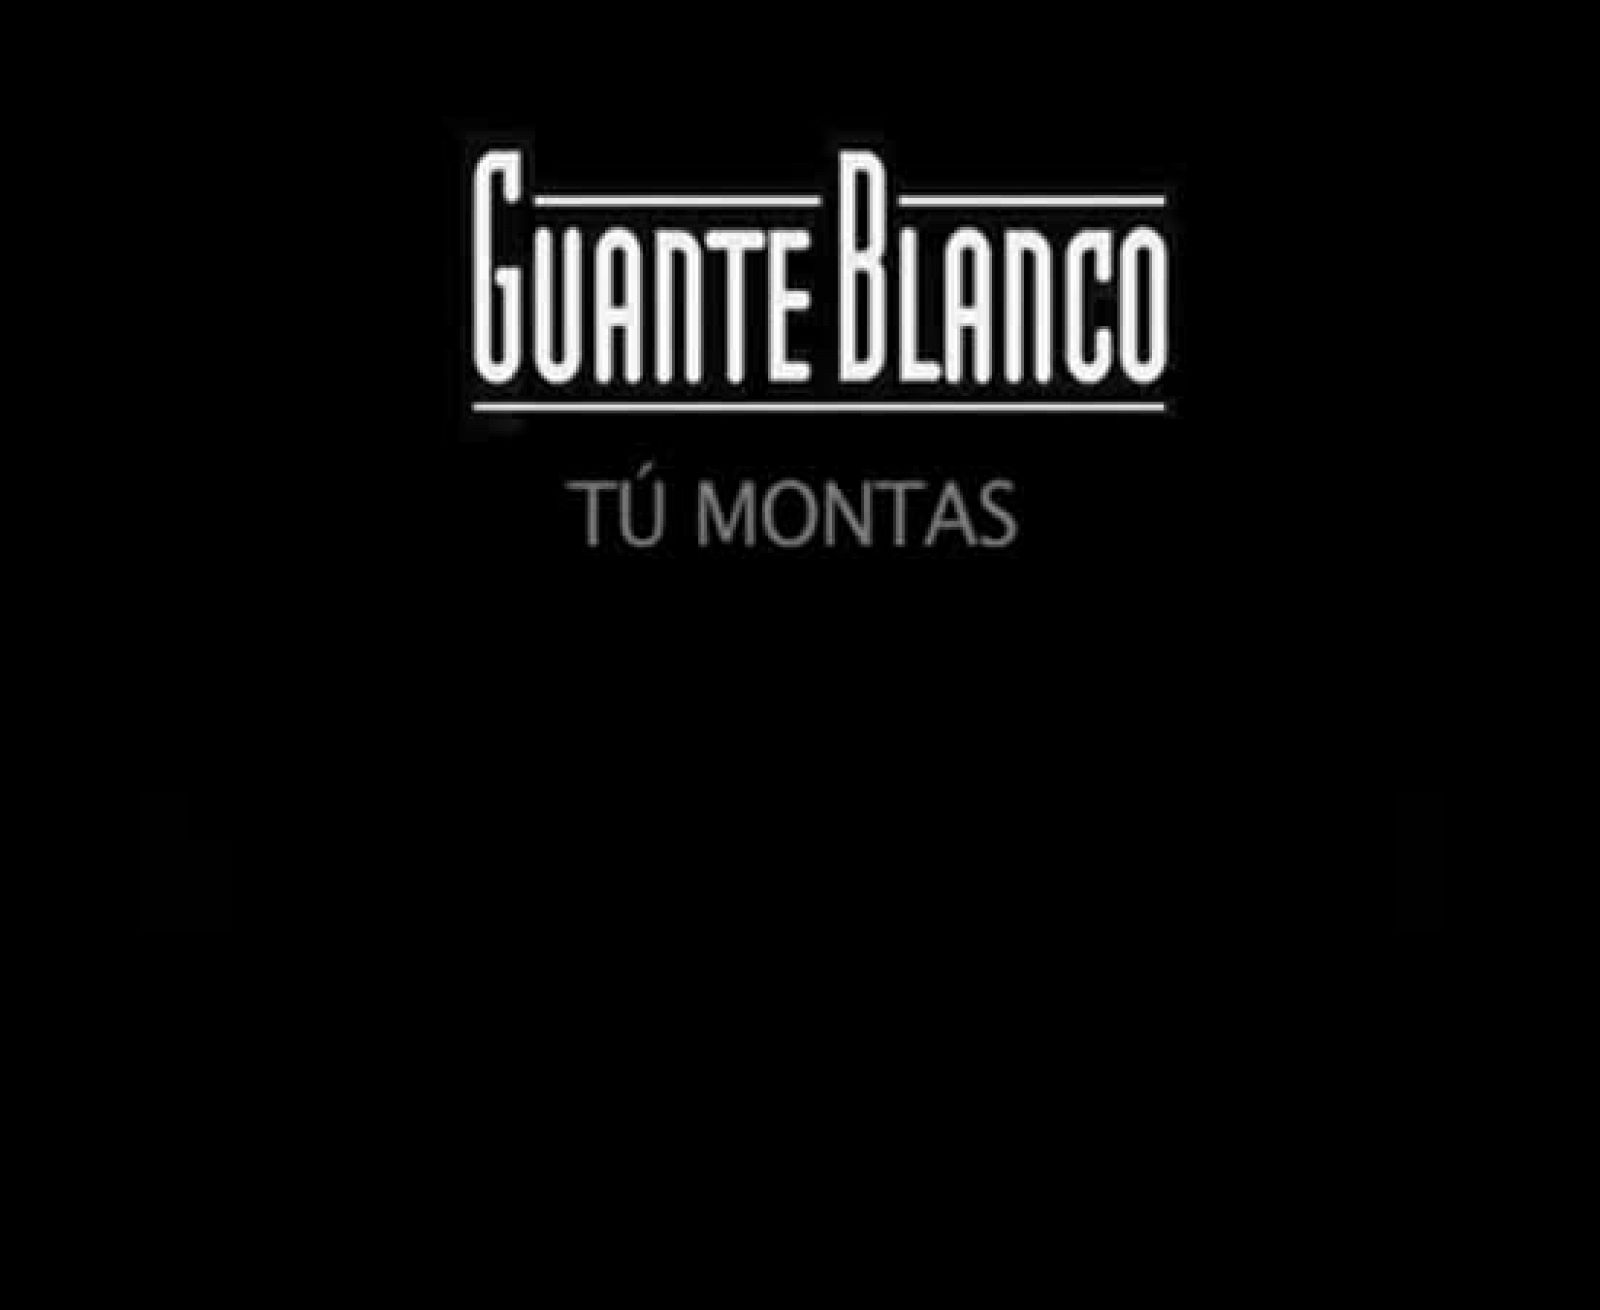 Guante blanco - Tú montas: Ana Inés Urrutia